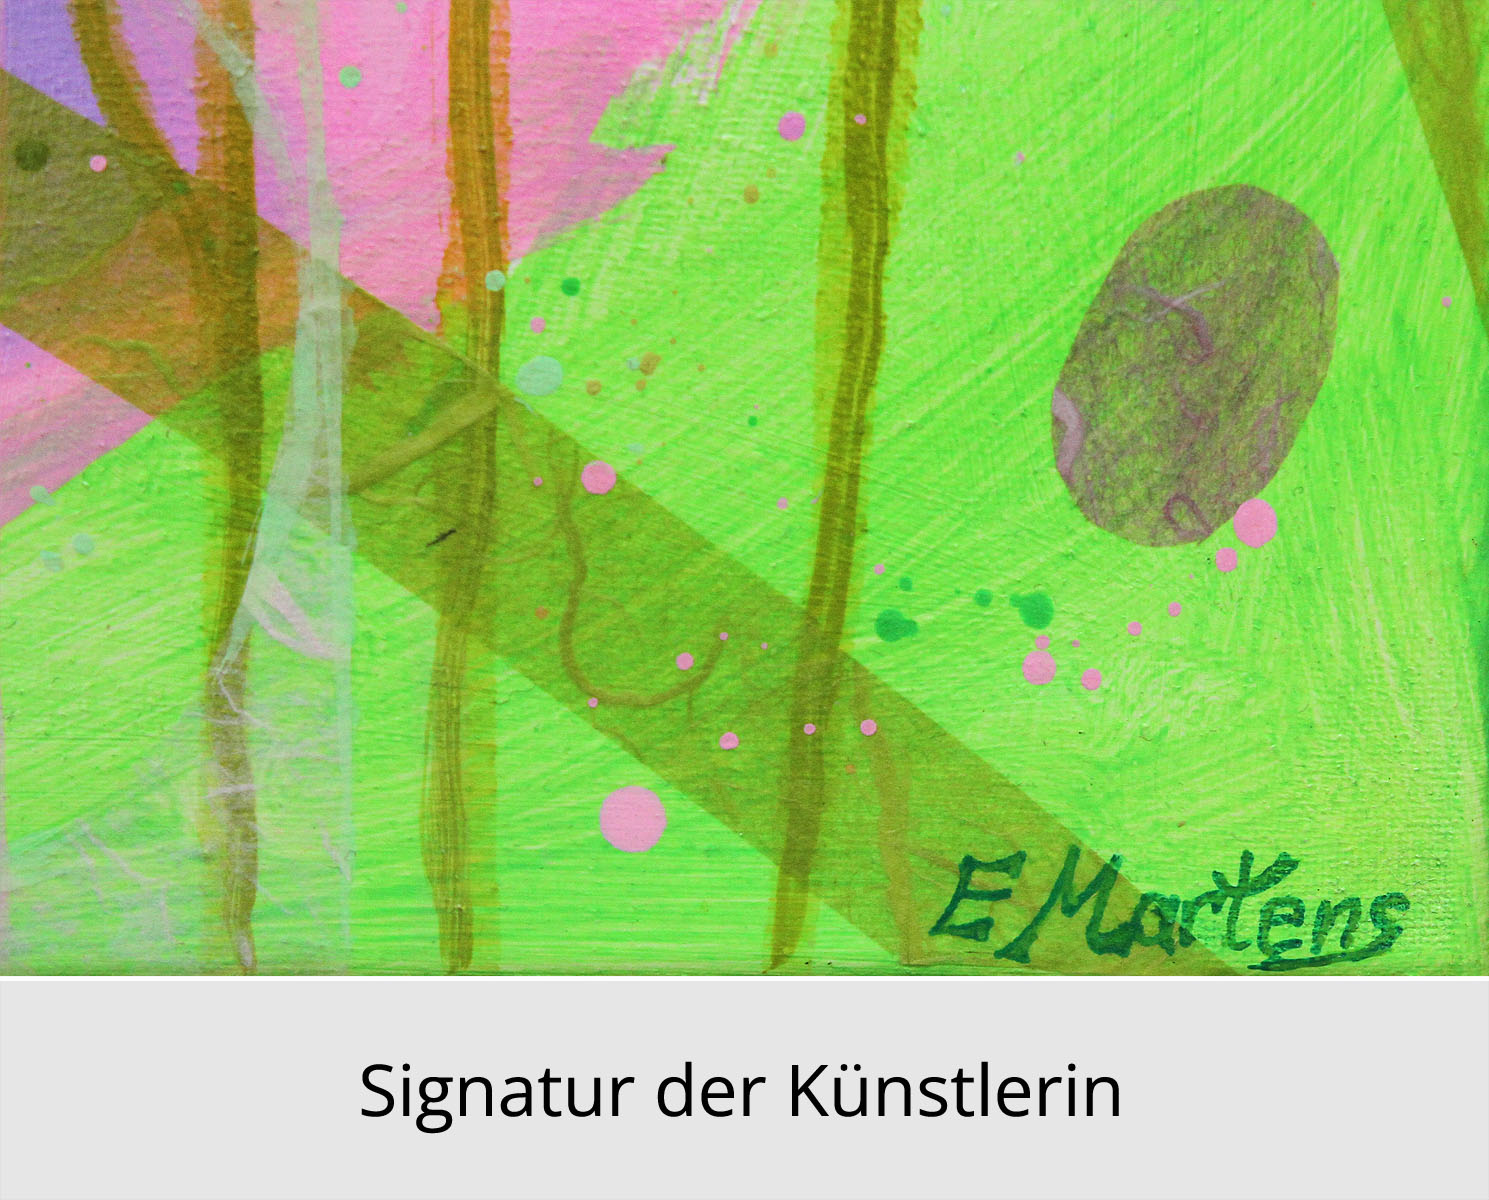 Abstrakte Malerei von Ewa Martens: "Himmlische Melodie IX", Original/Unikat